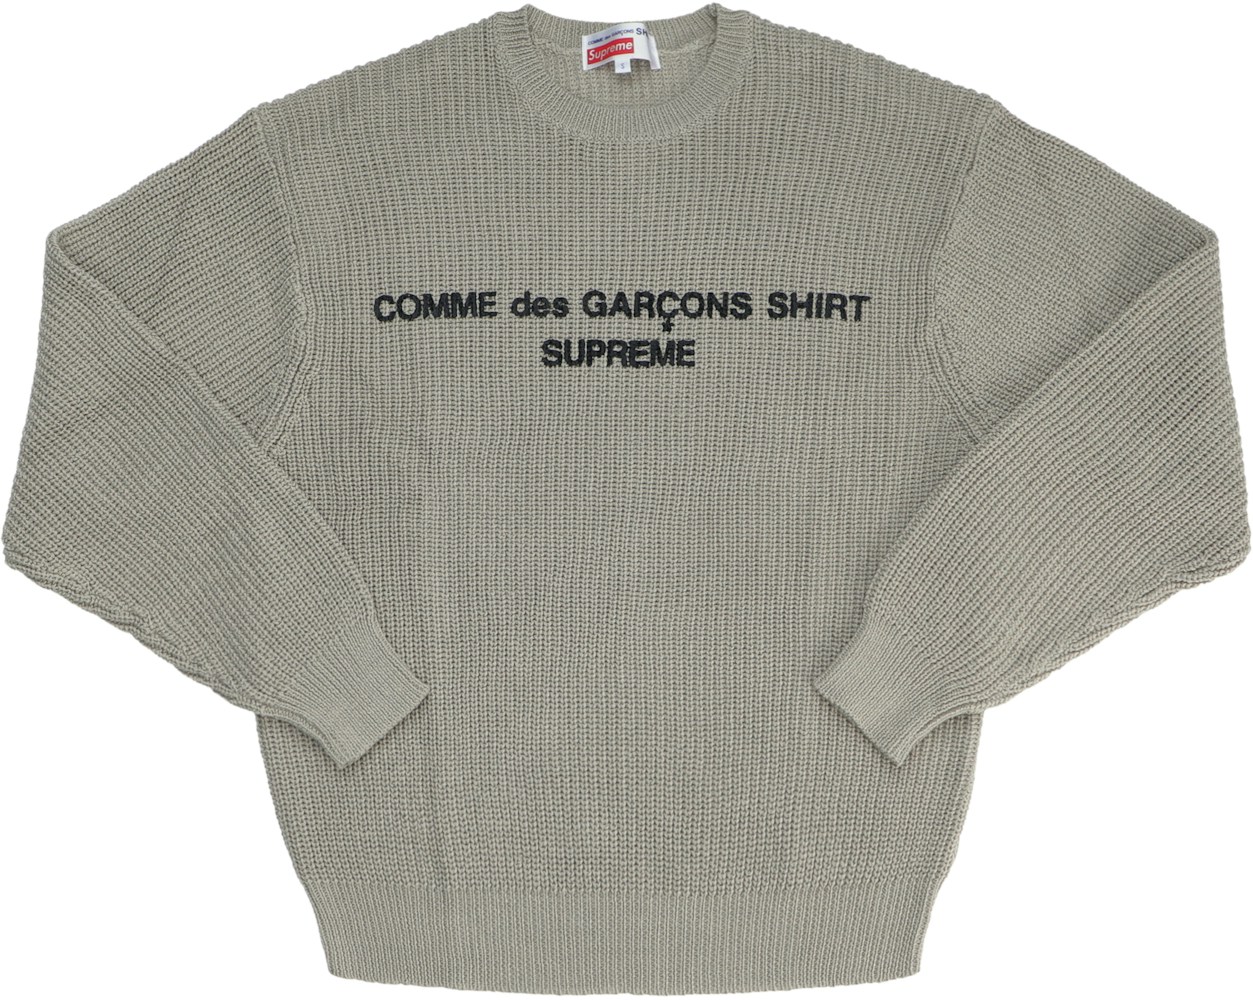 Supreme Comme Des Garcons Shirt Sweater Tan Fw18